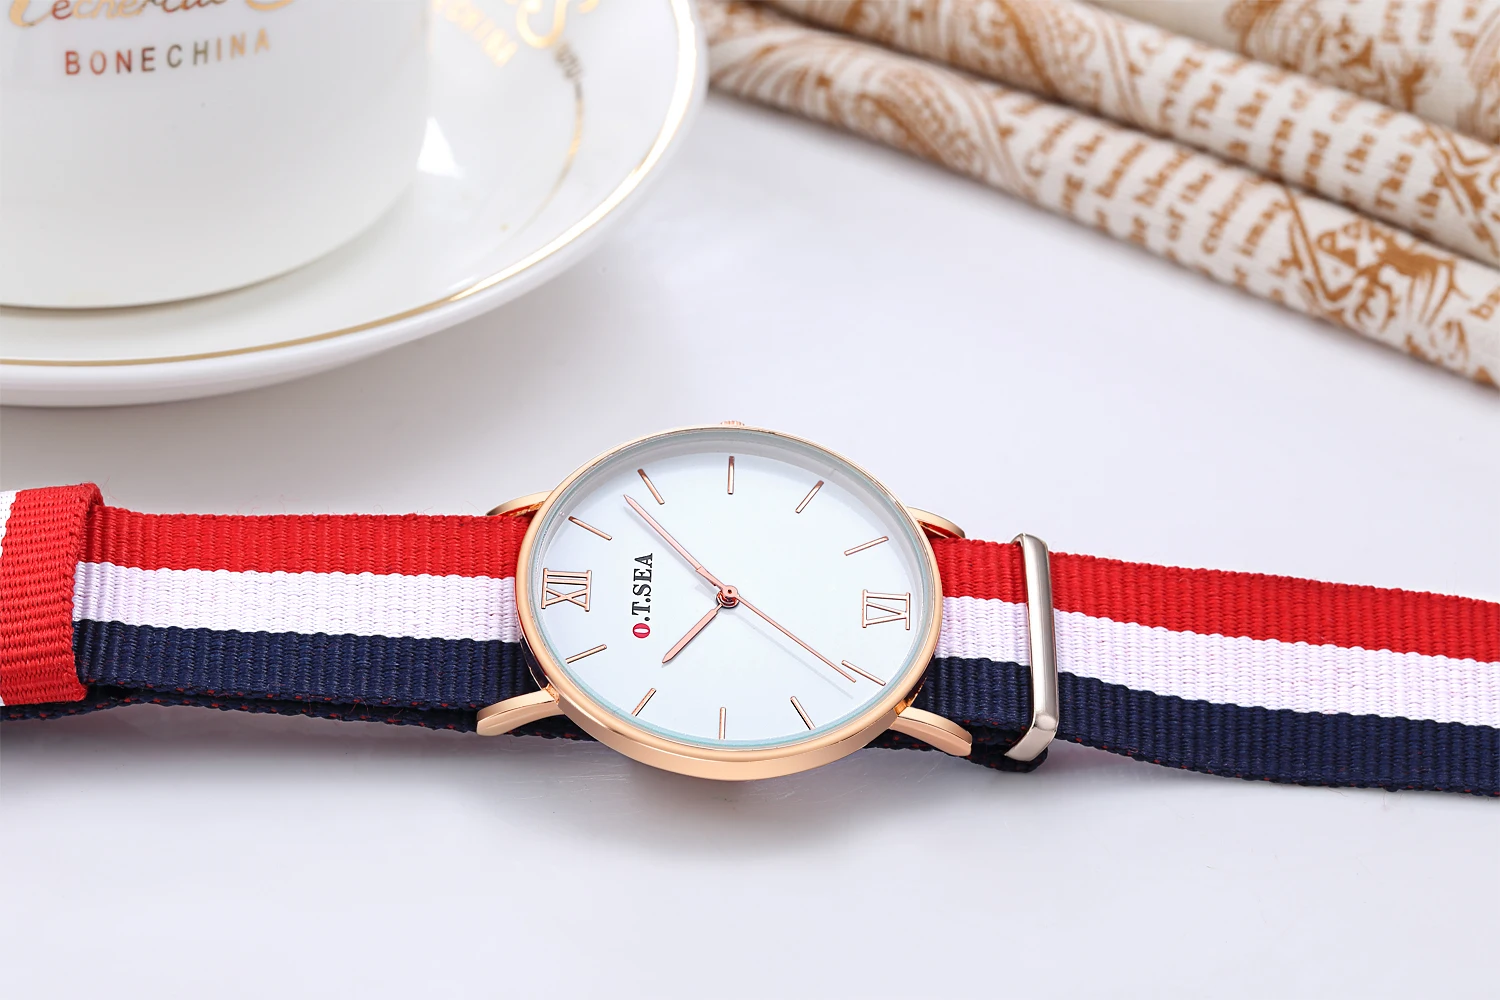 Лидер продаж O. T. SEA бренд Мягкий Нейлоновый ремешок часы для женщин мужчин модное платье кварцевые наручные часы Relojes Mujer